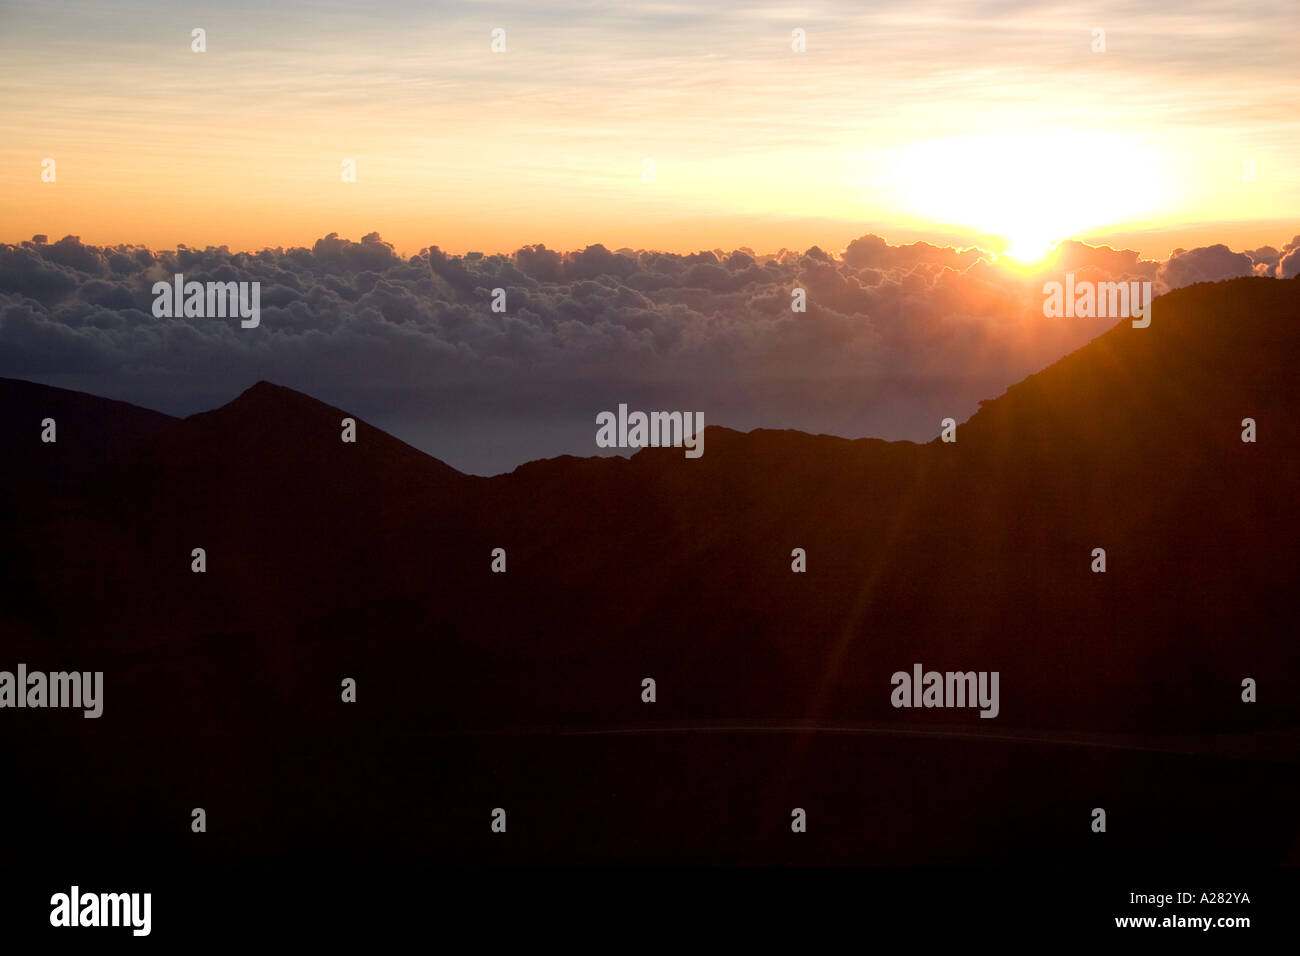 Sonnenaufgang über den Wolken oben auf Mount Haleakala auf der Insel Maui, Hawaii. Stockfoto